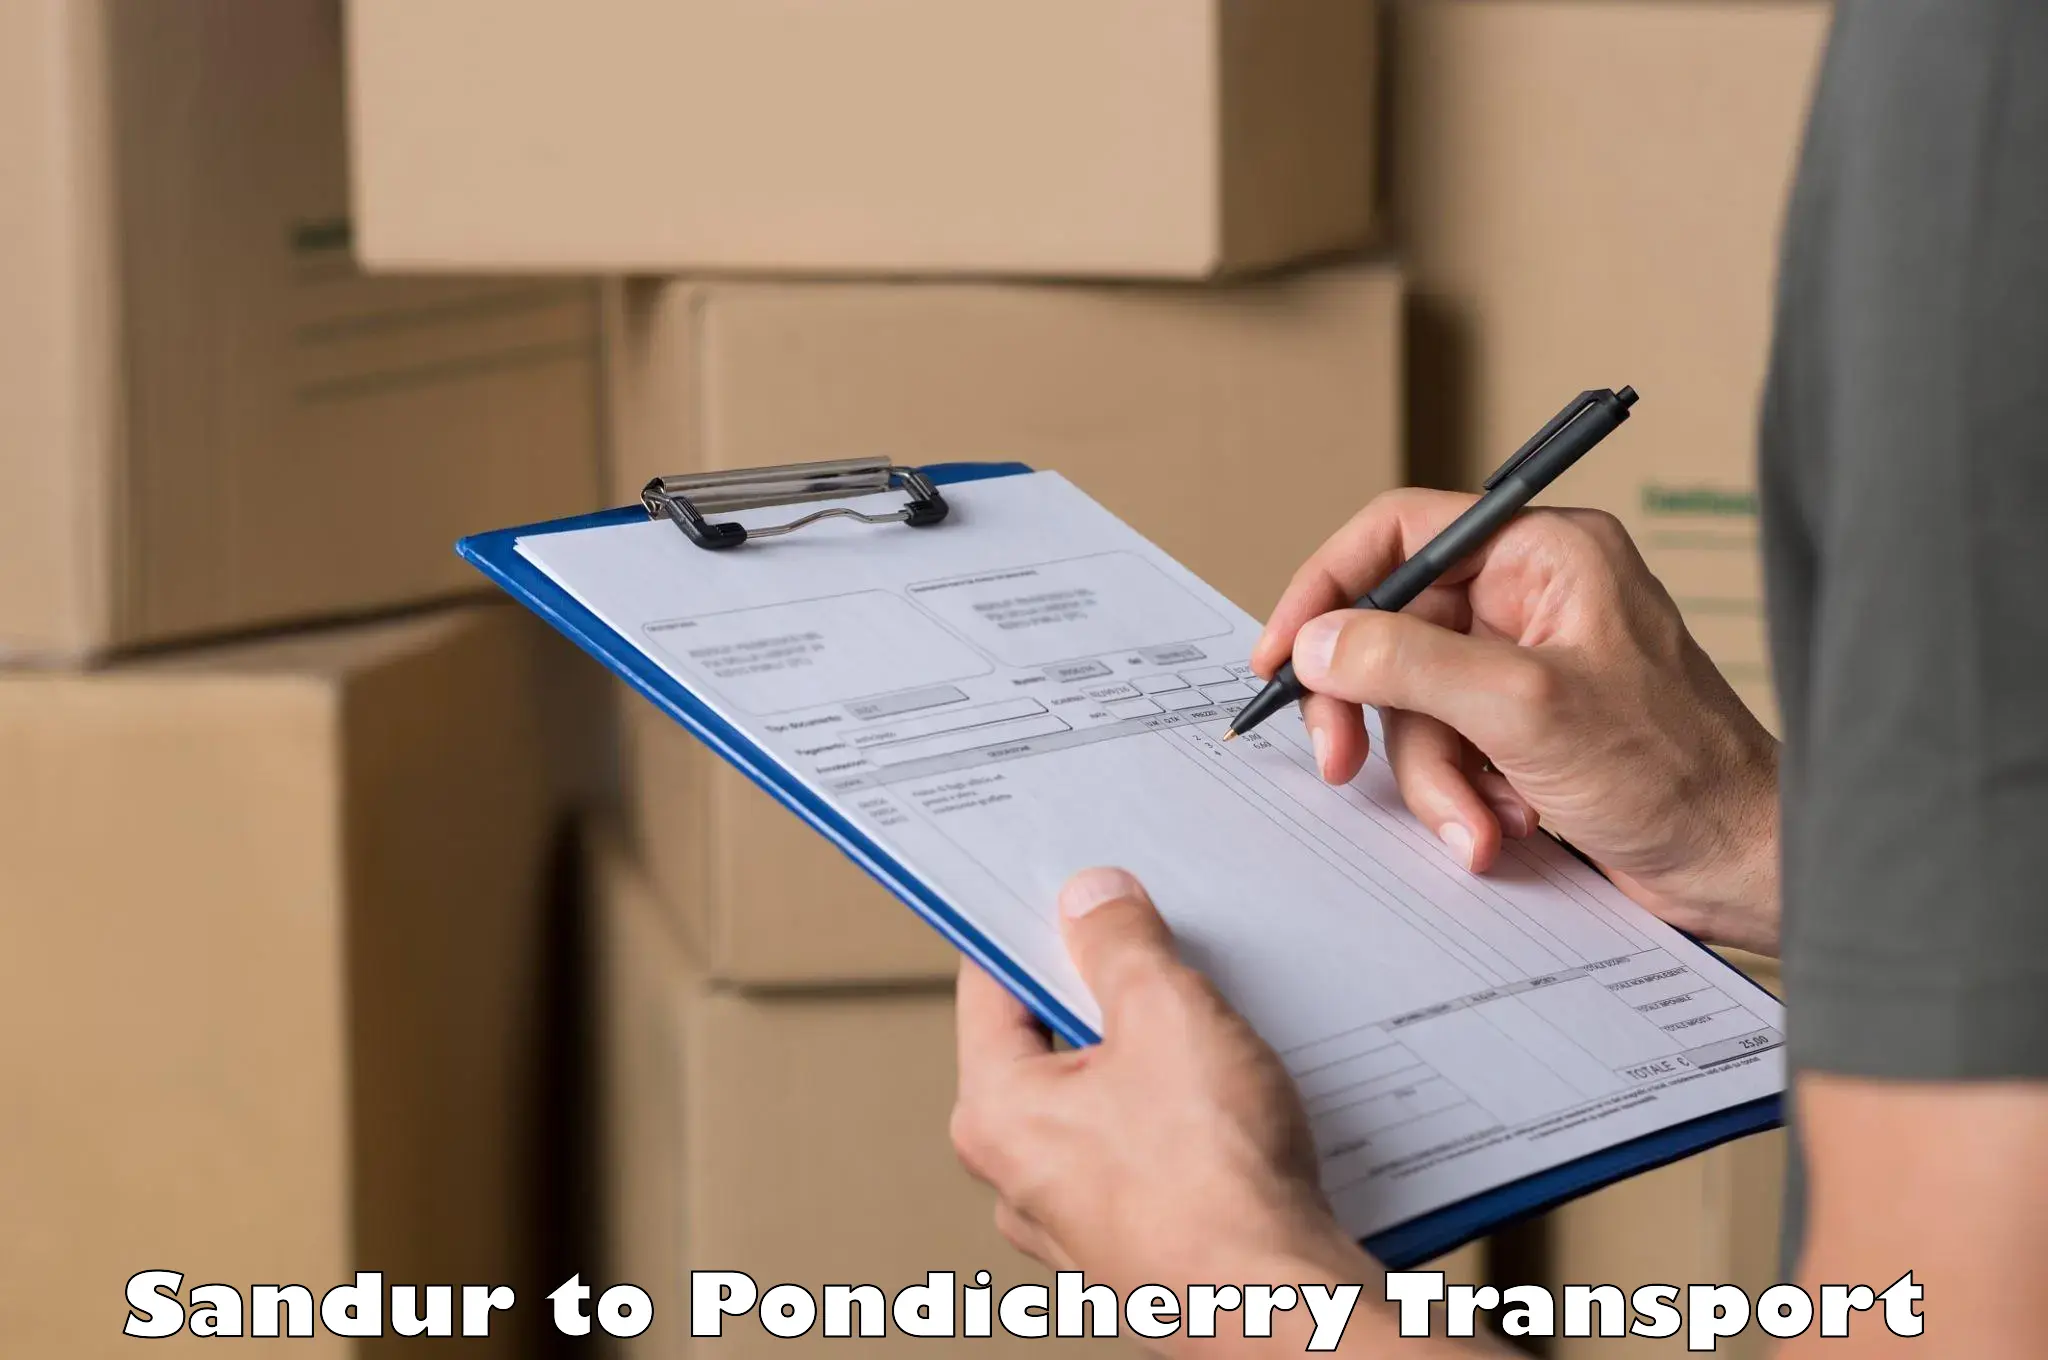 Online transport service Sandur to Pondicherry